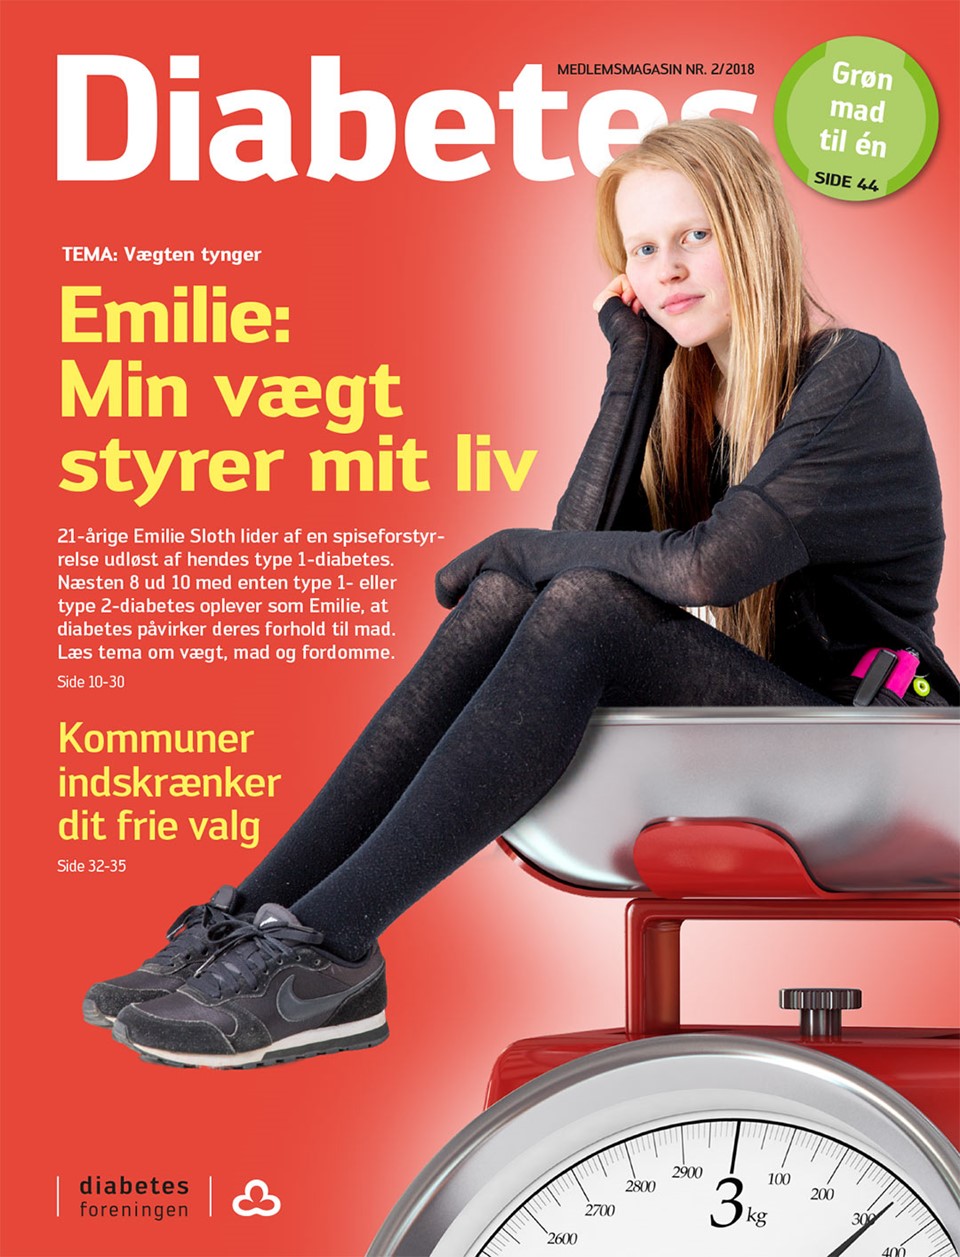  Forside af magasinet Diabetes maj 2018